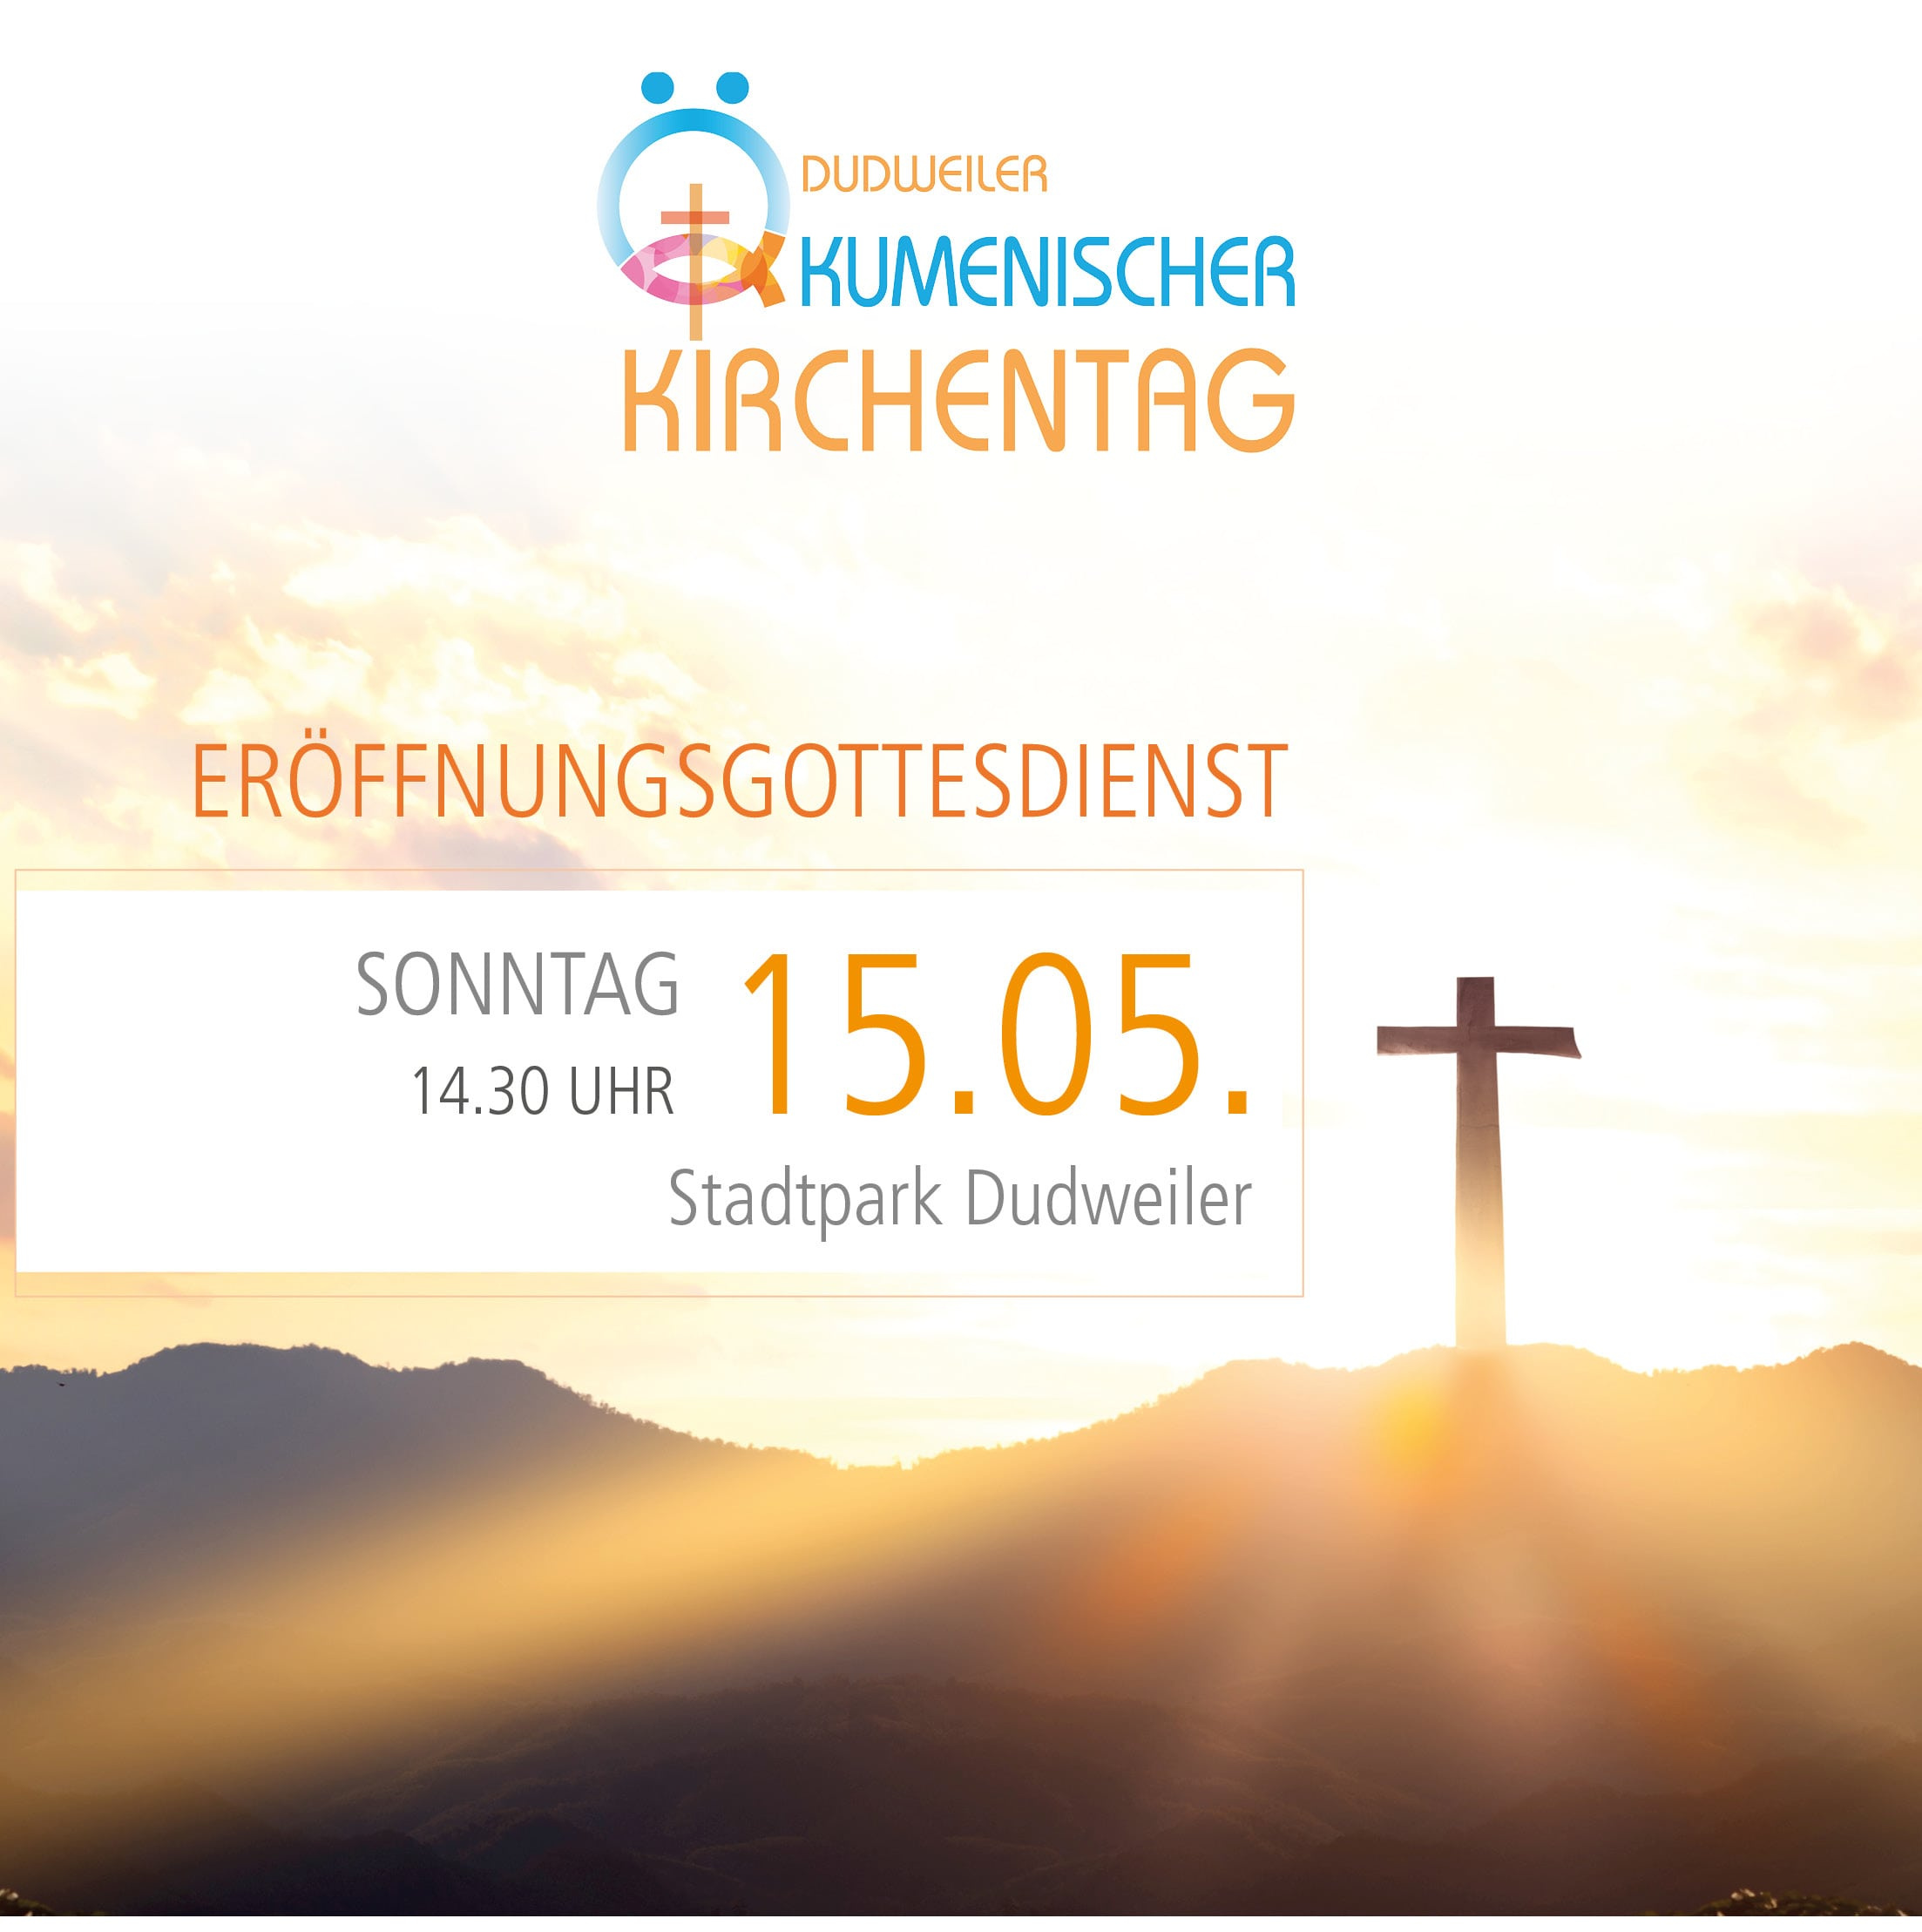 Eröffnungsgottesdienst Dudweiler Kirchentag